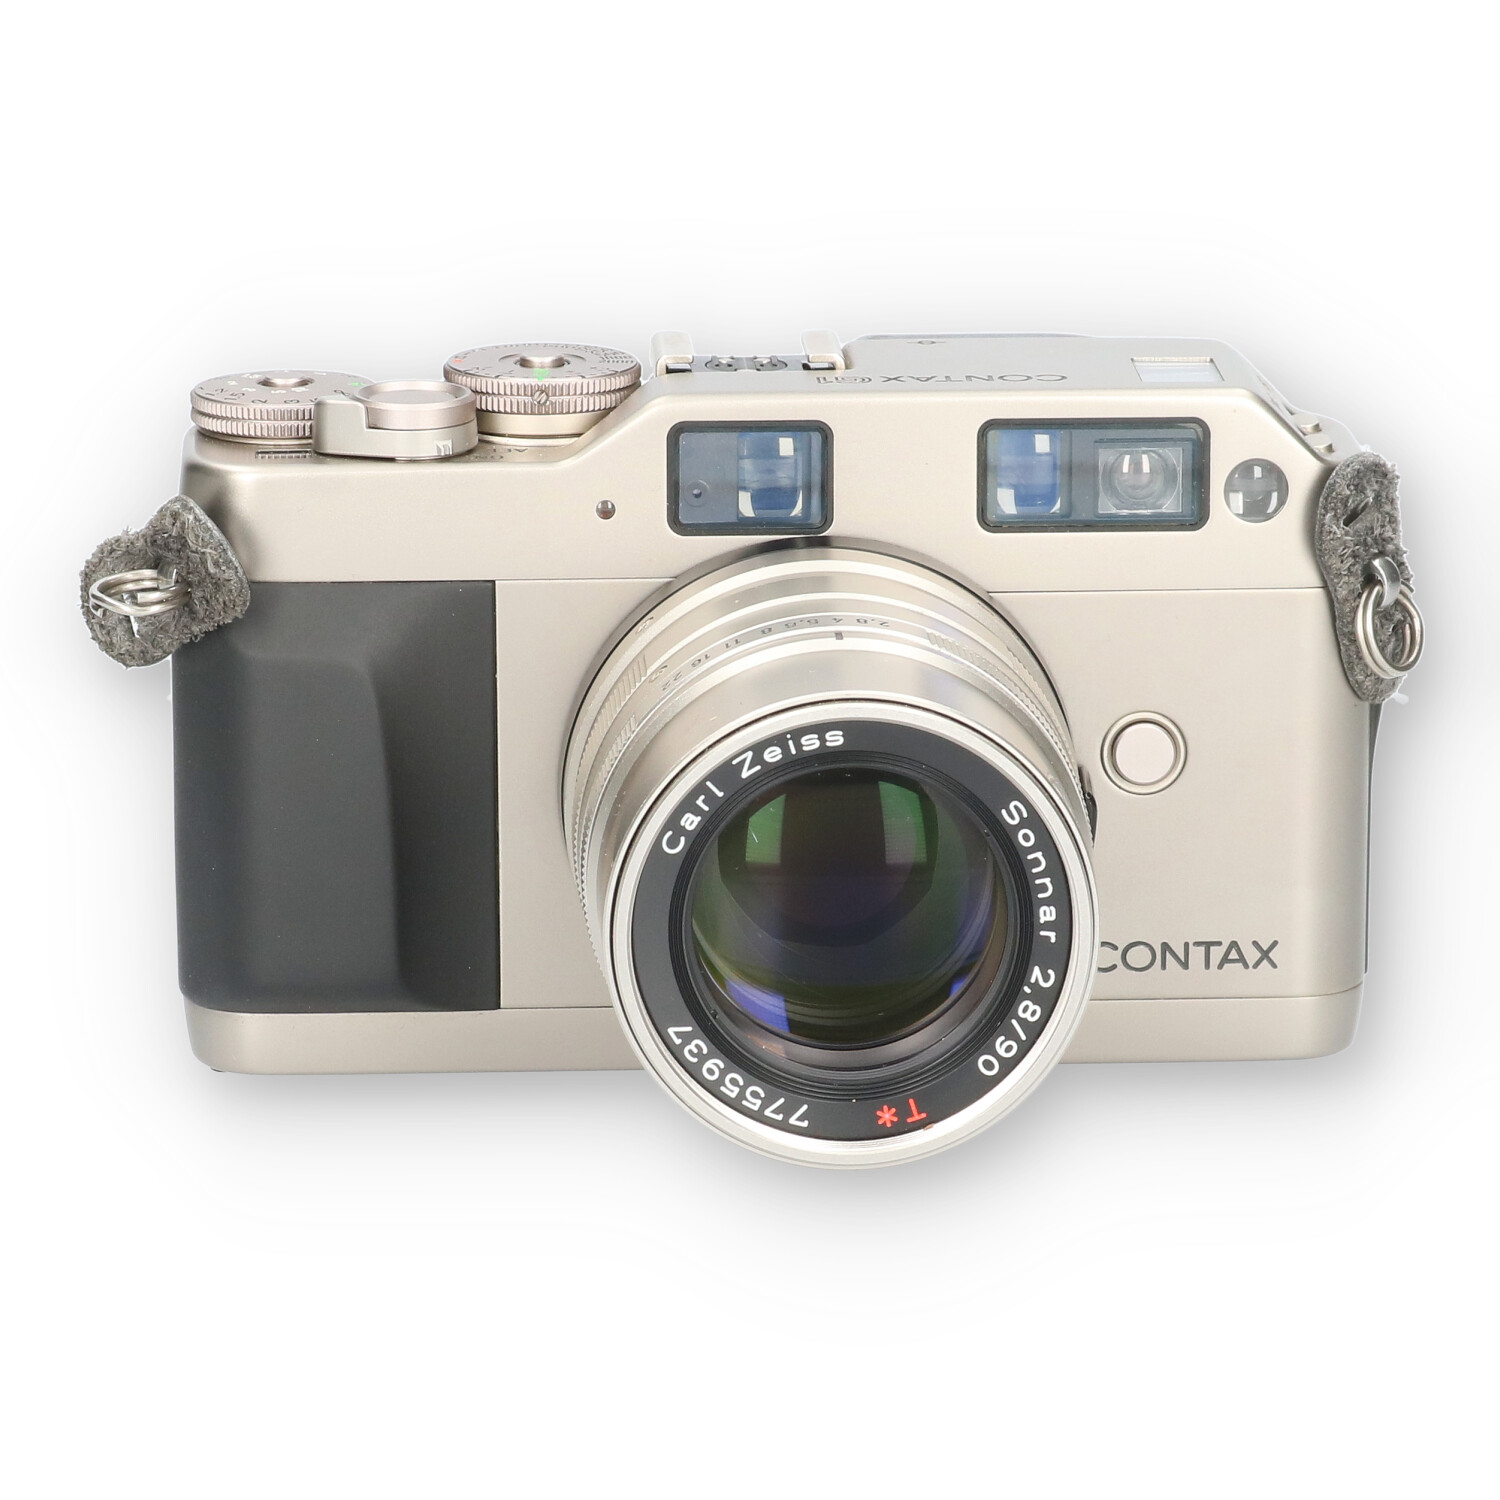 3点セット CONTAX G1, Biogon21mm, sonner90mm - フィルムカメラ